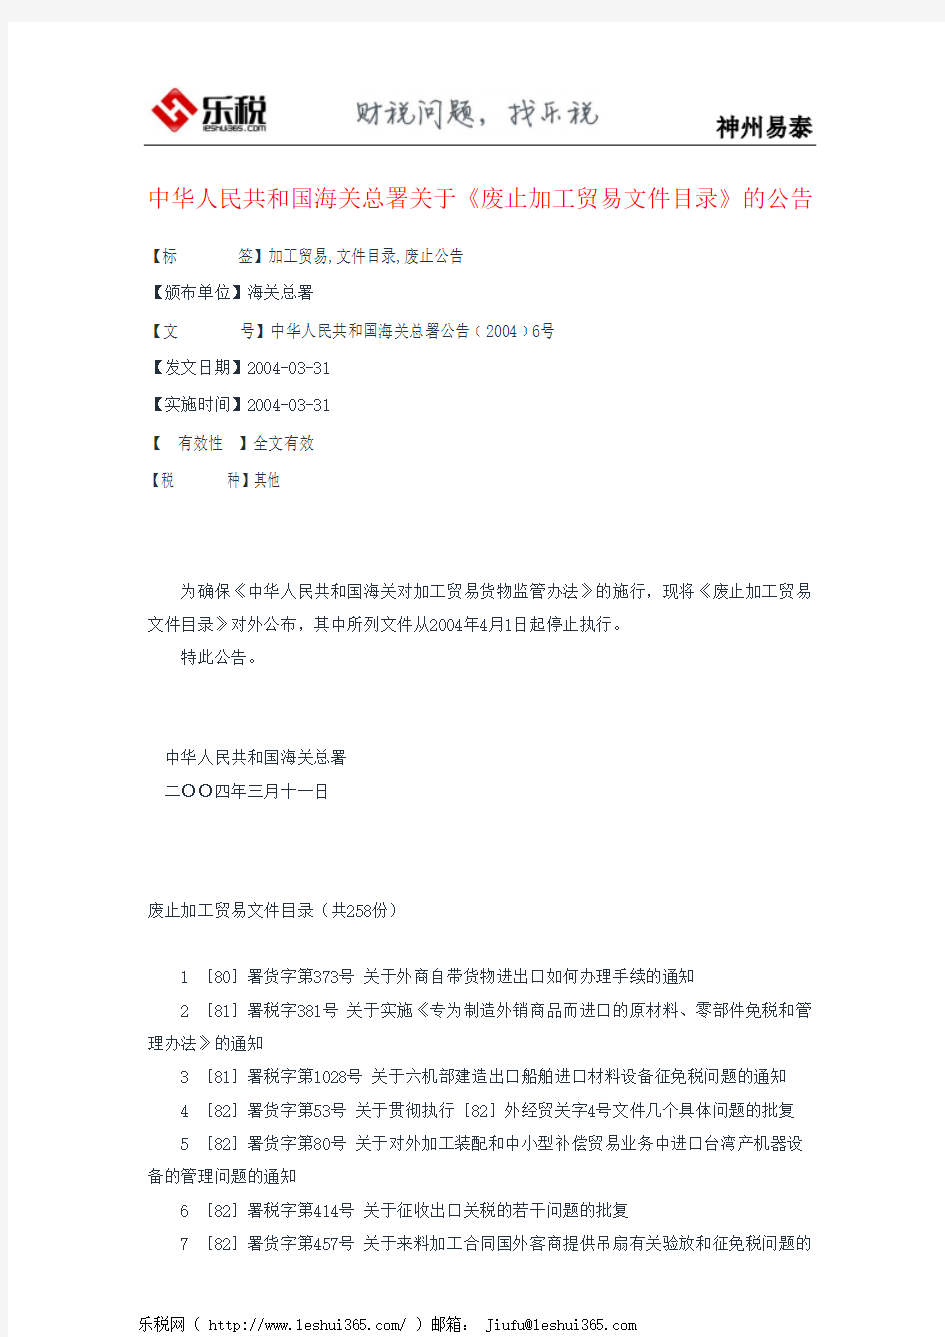 中华人民共和国海关总署关于《废止加工贸易文件目录》的公告